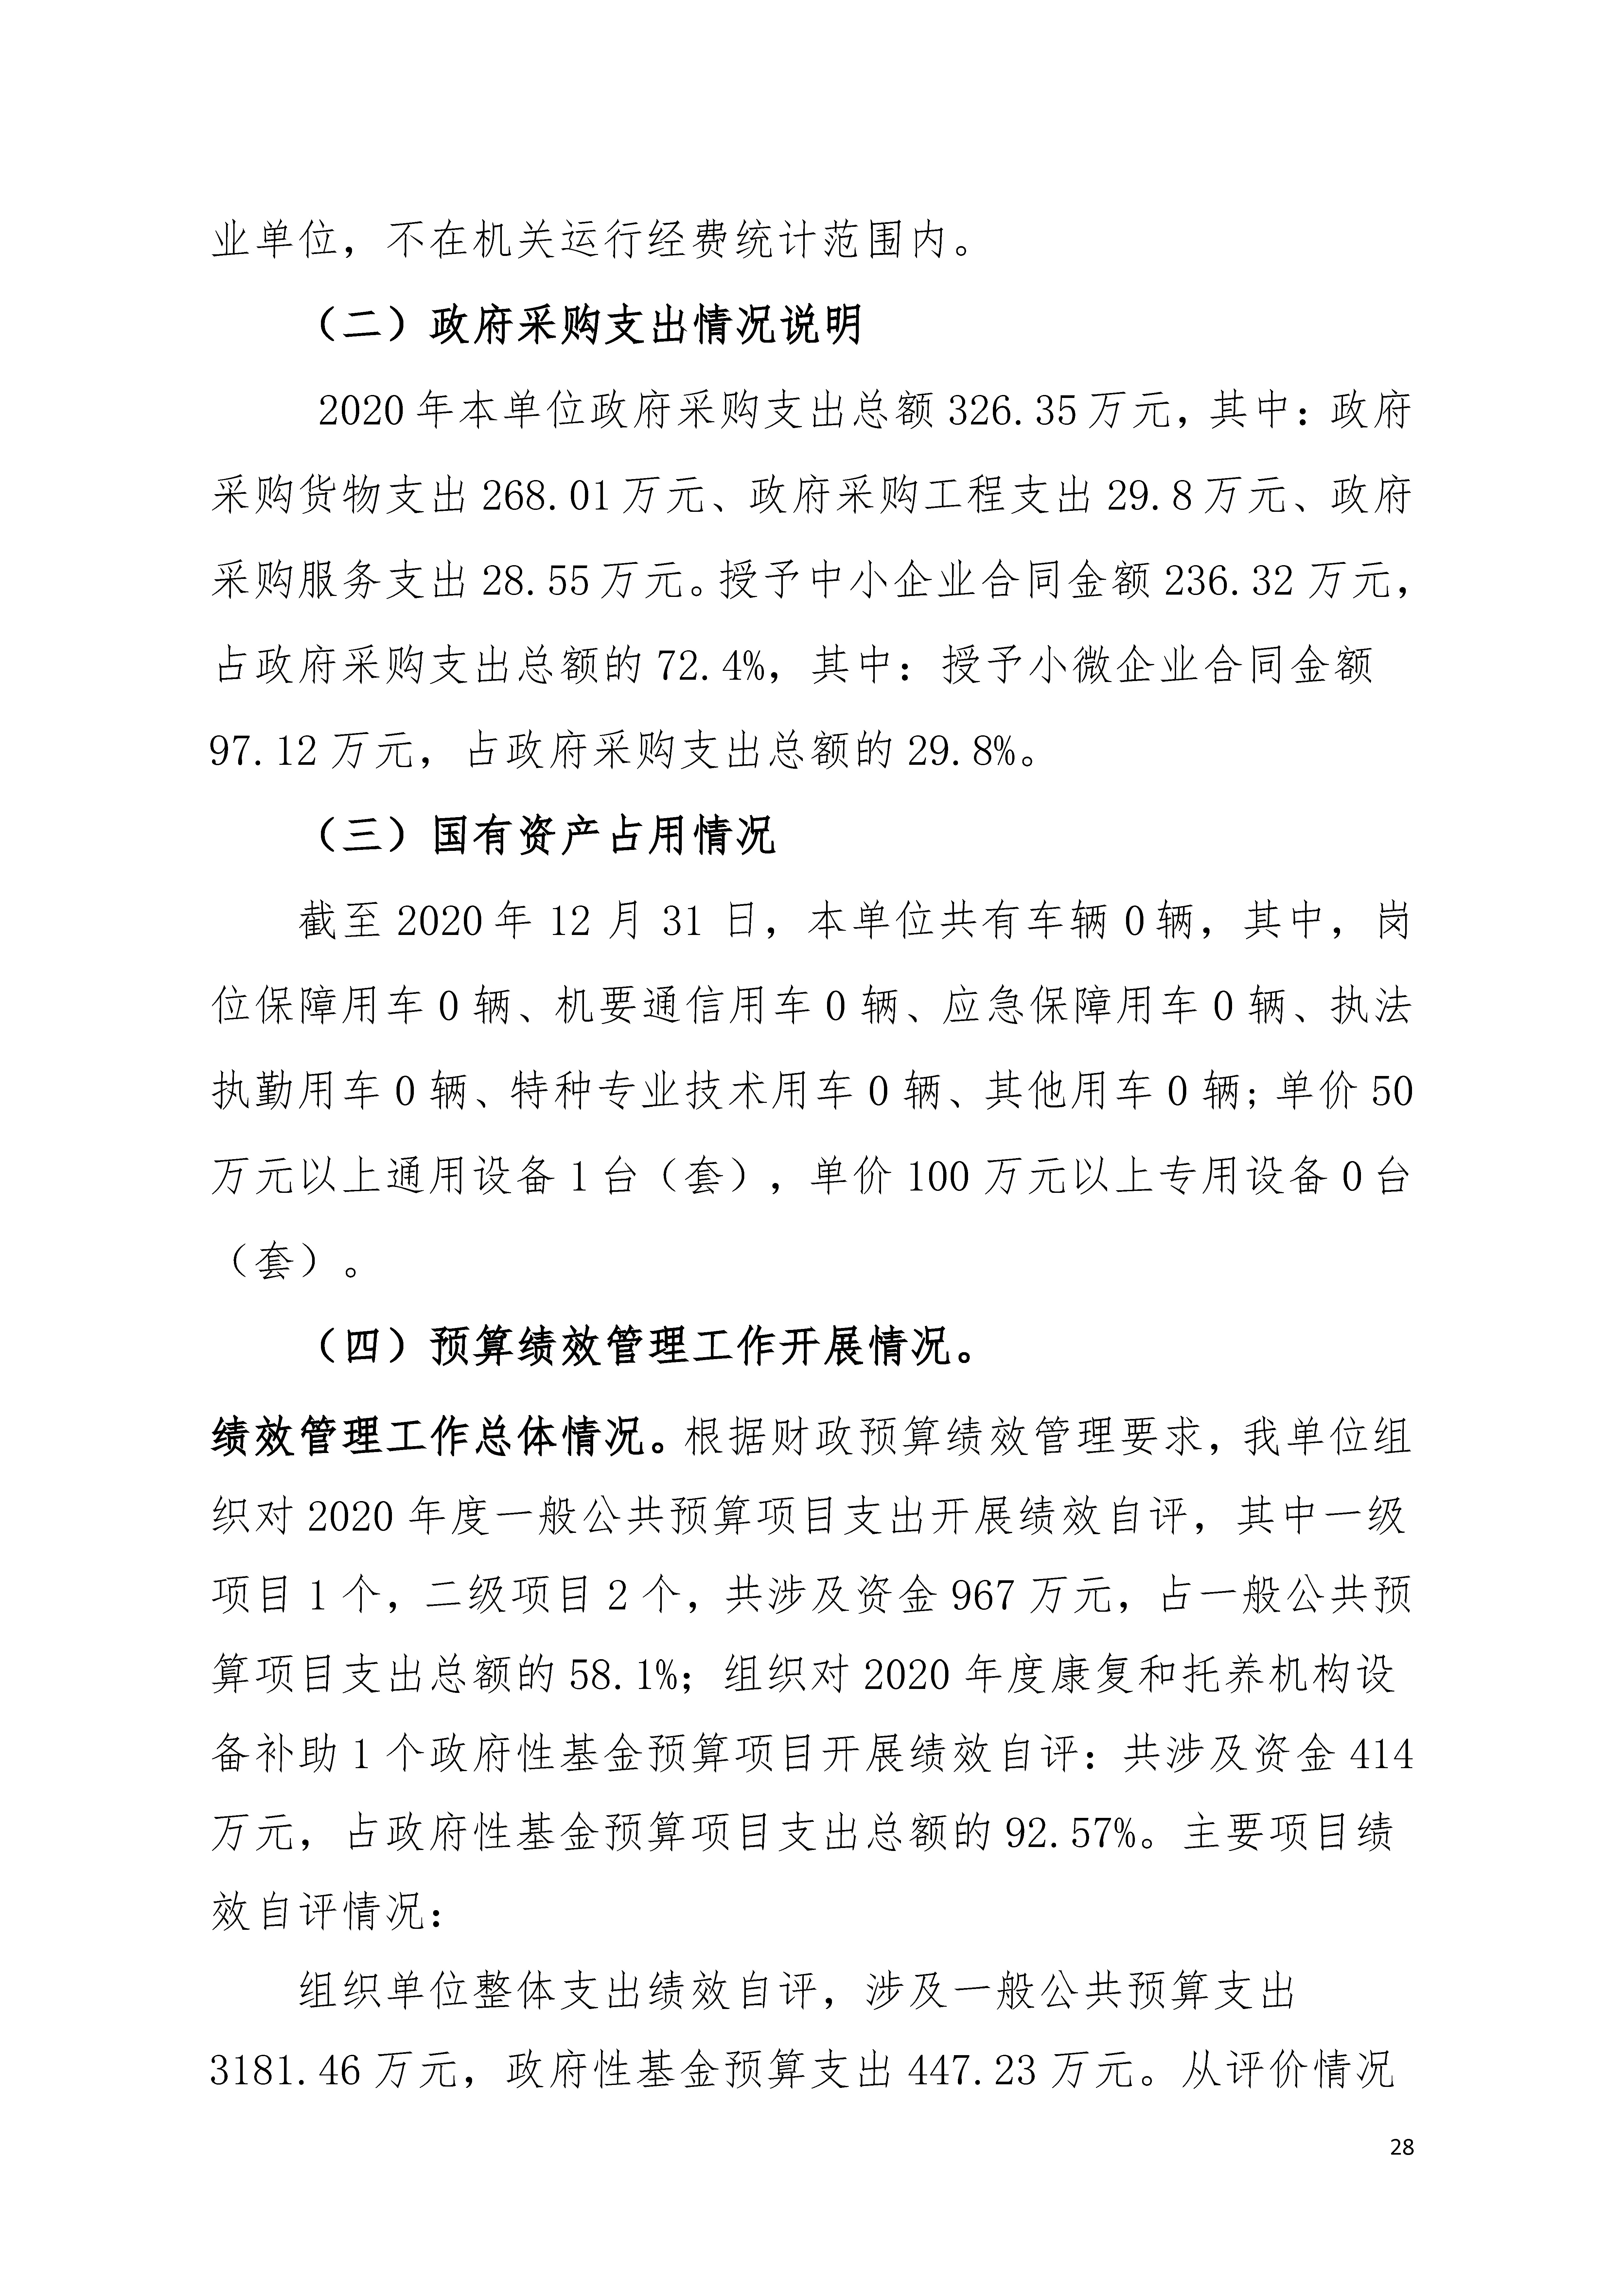 2020年广东省残疾人康复中心部门决算_页面_28.jpg